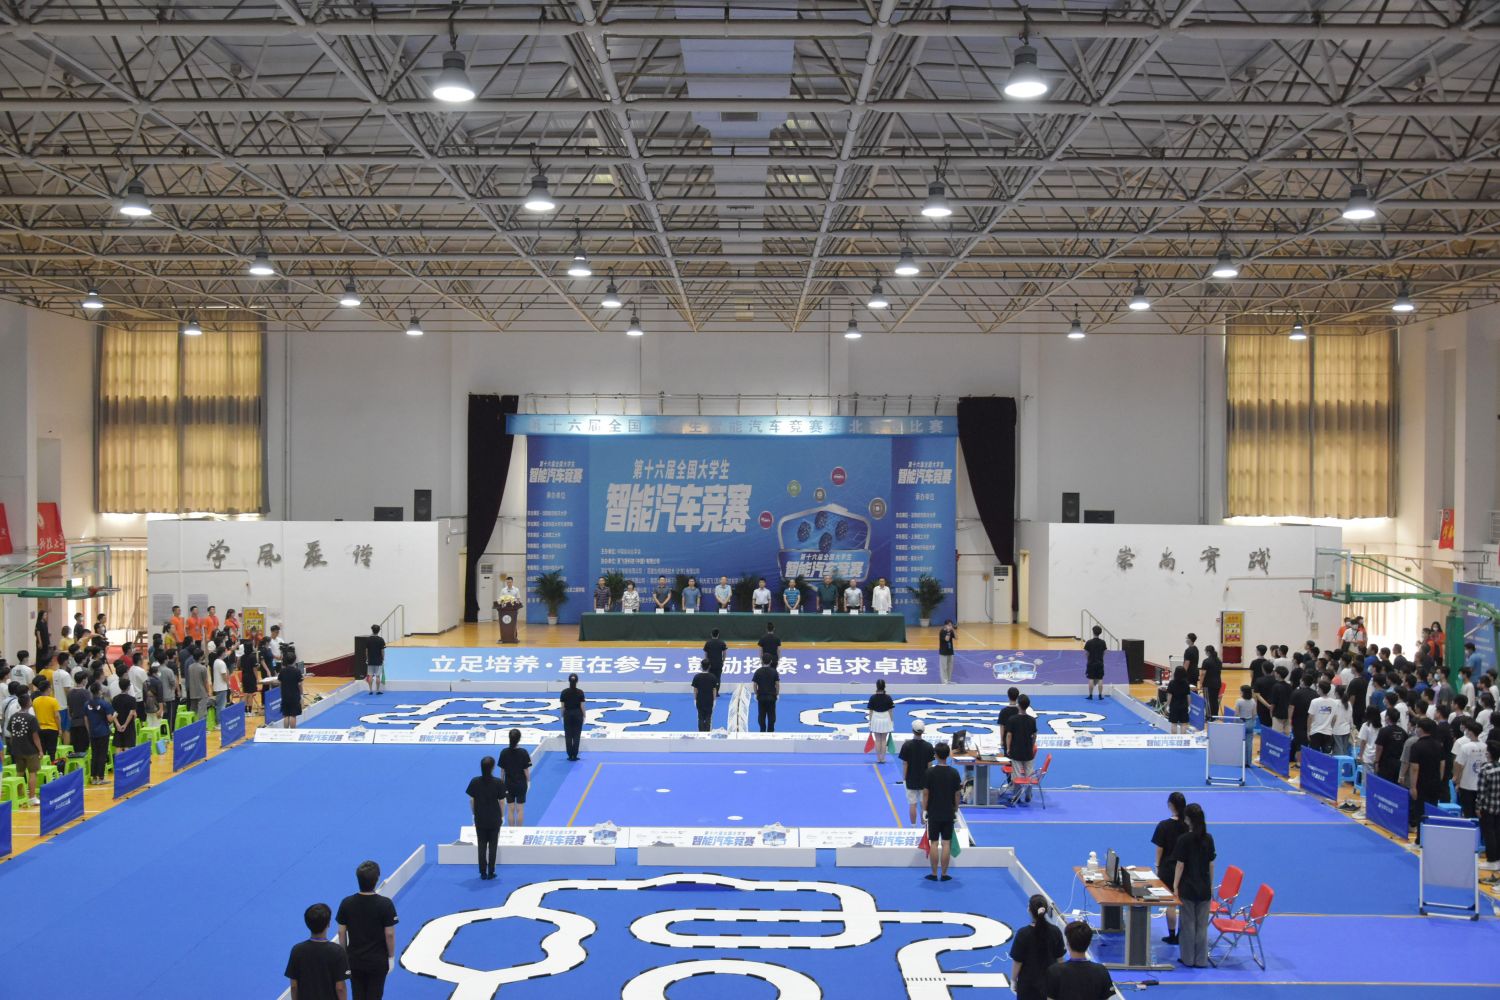 王者荣耀亚运版本入选杭州2022年亚运会正式竞赛项目-王者荣耀官方网站-腾讯游戏